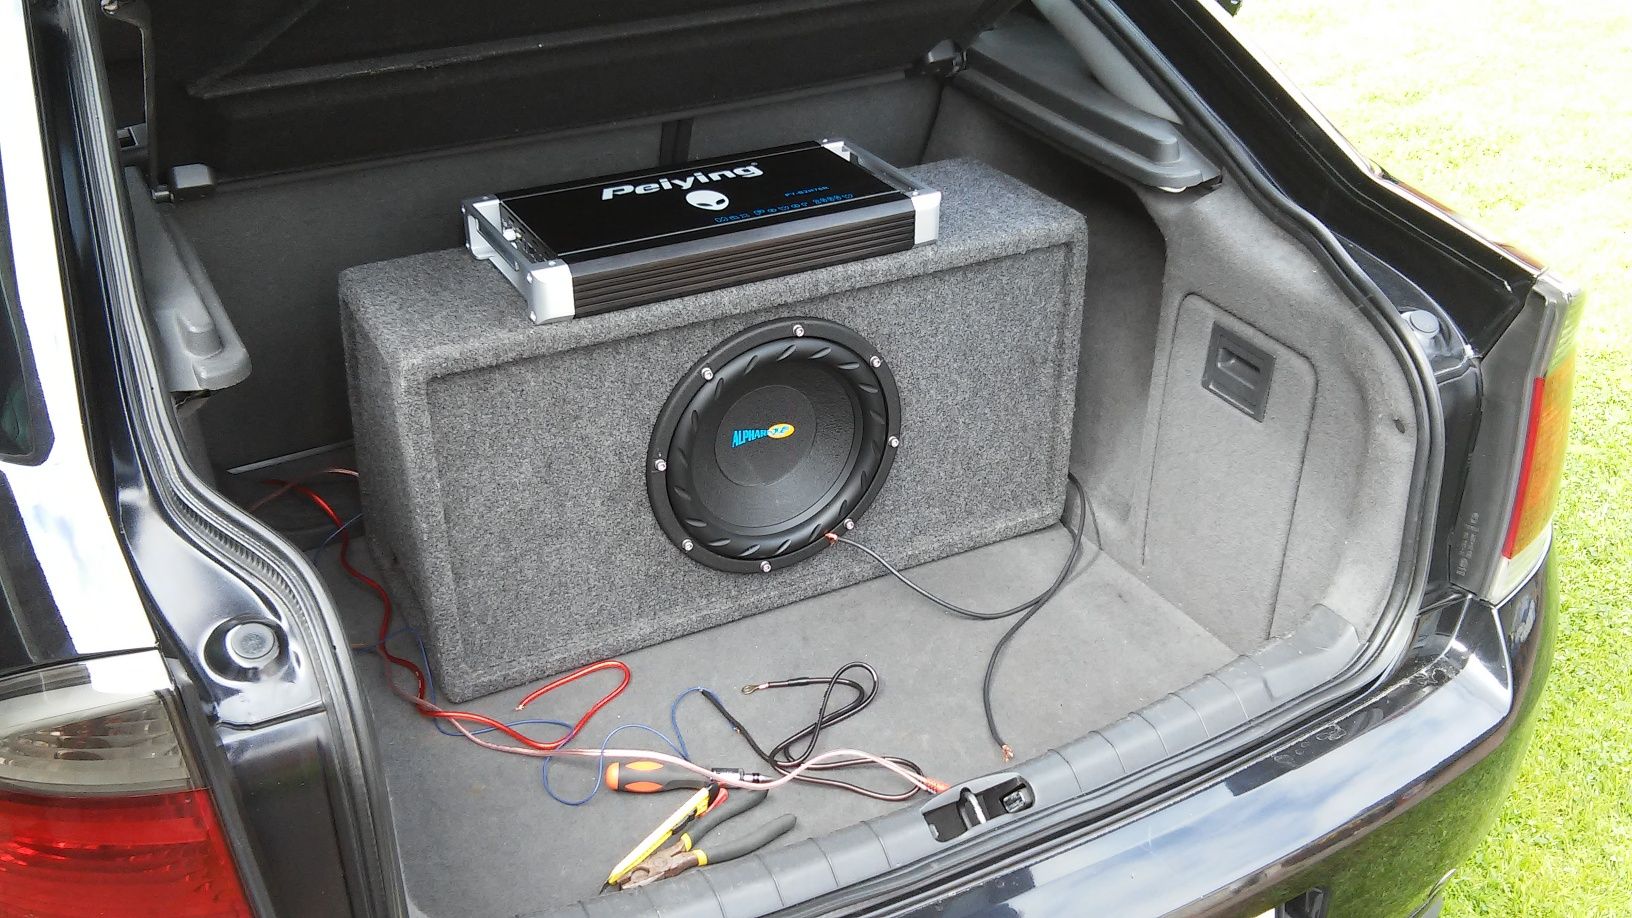 Zestaw Car Audio - Subwoofer, skrzynia basowa, wzmacniacz, kondensator